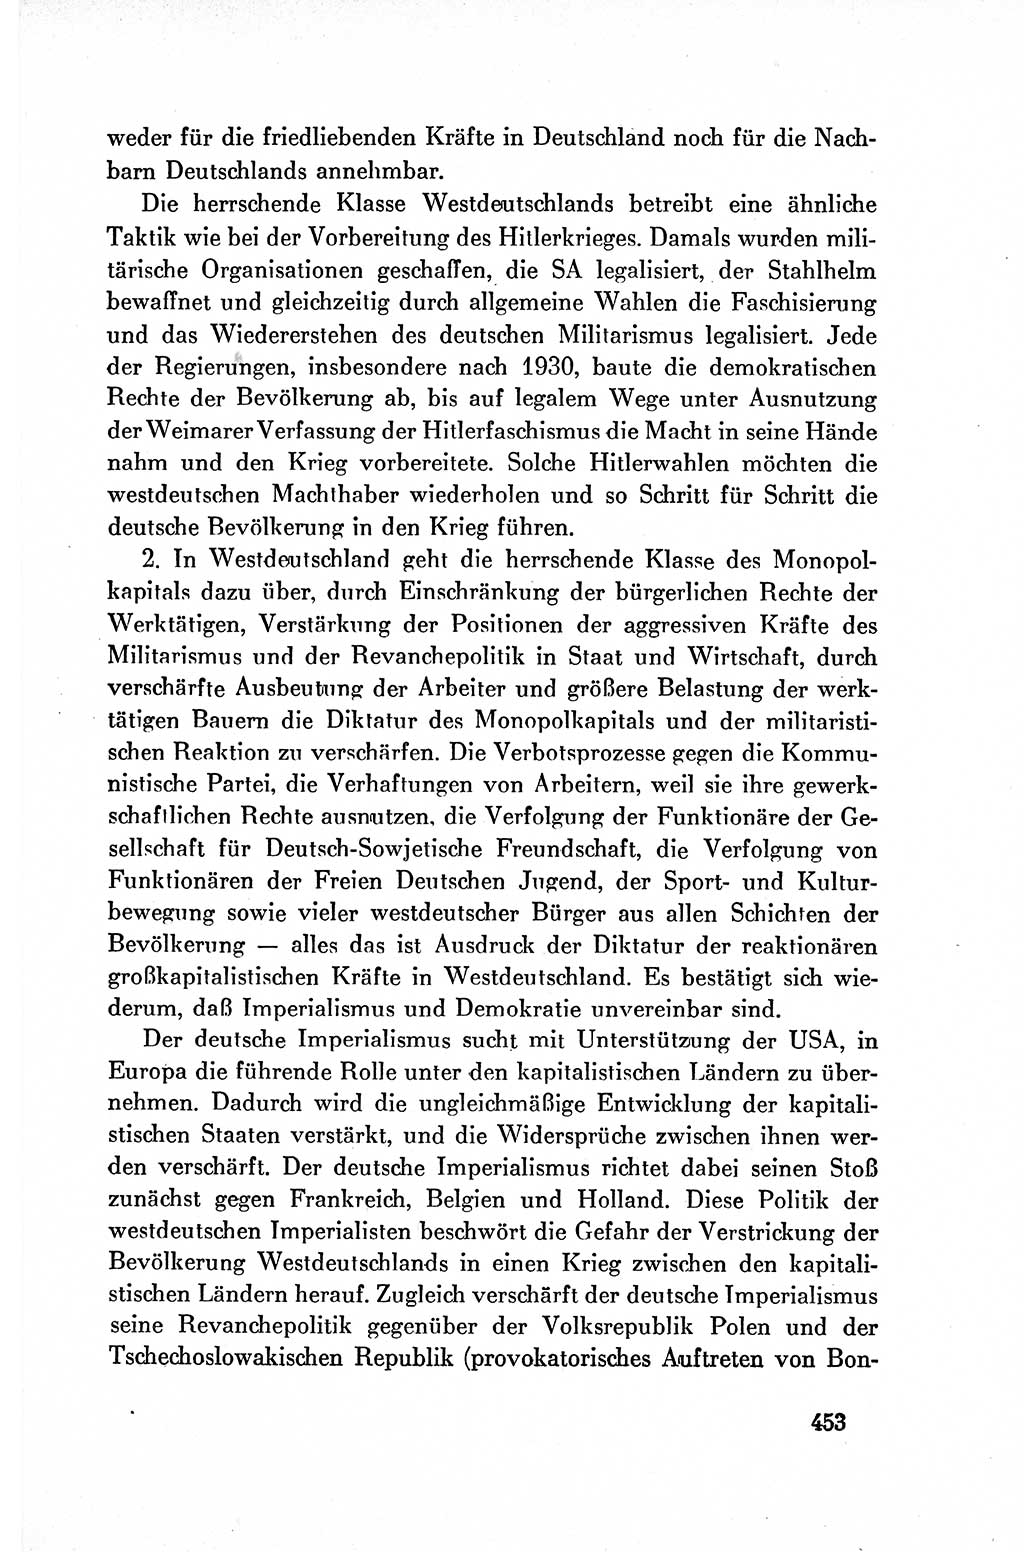 Dokumente der Sozialistischen Einheitspartei Deutschlands (SED) [Deutsche Demokratische Republik (DDR)] 1954-1955, Seite 453 (Dok. SED DDR 1954-1955, S. 453)